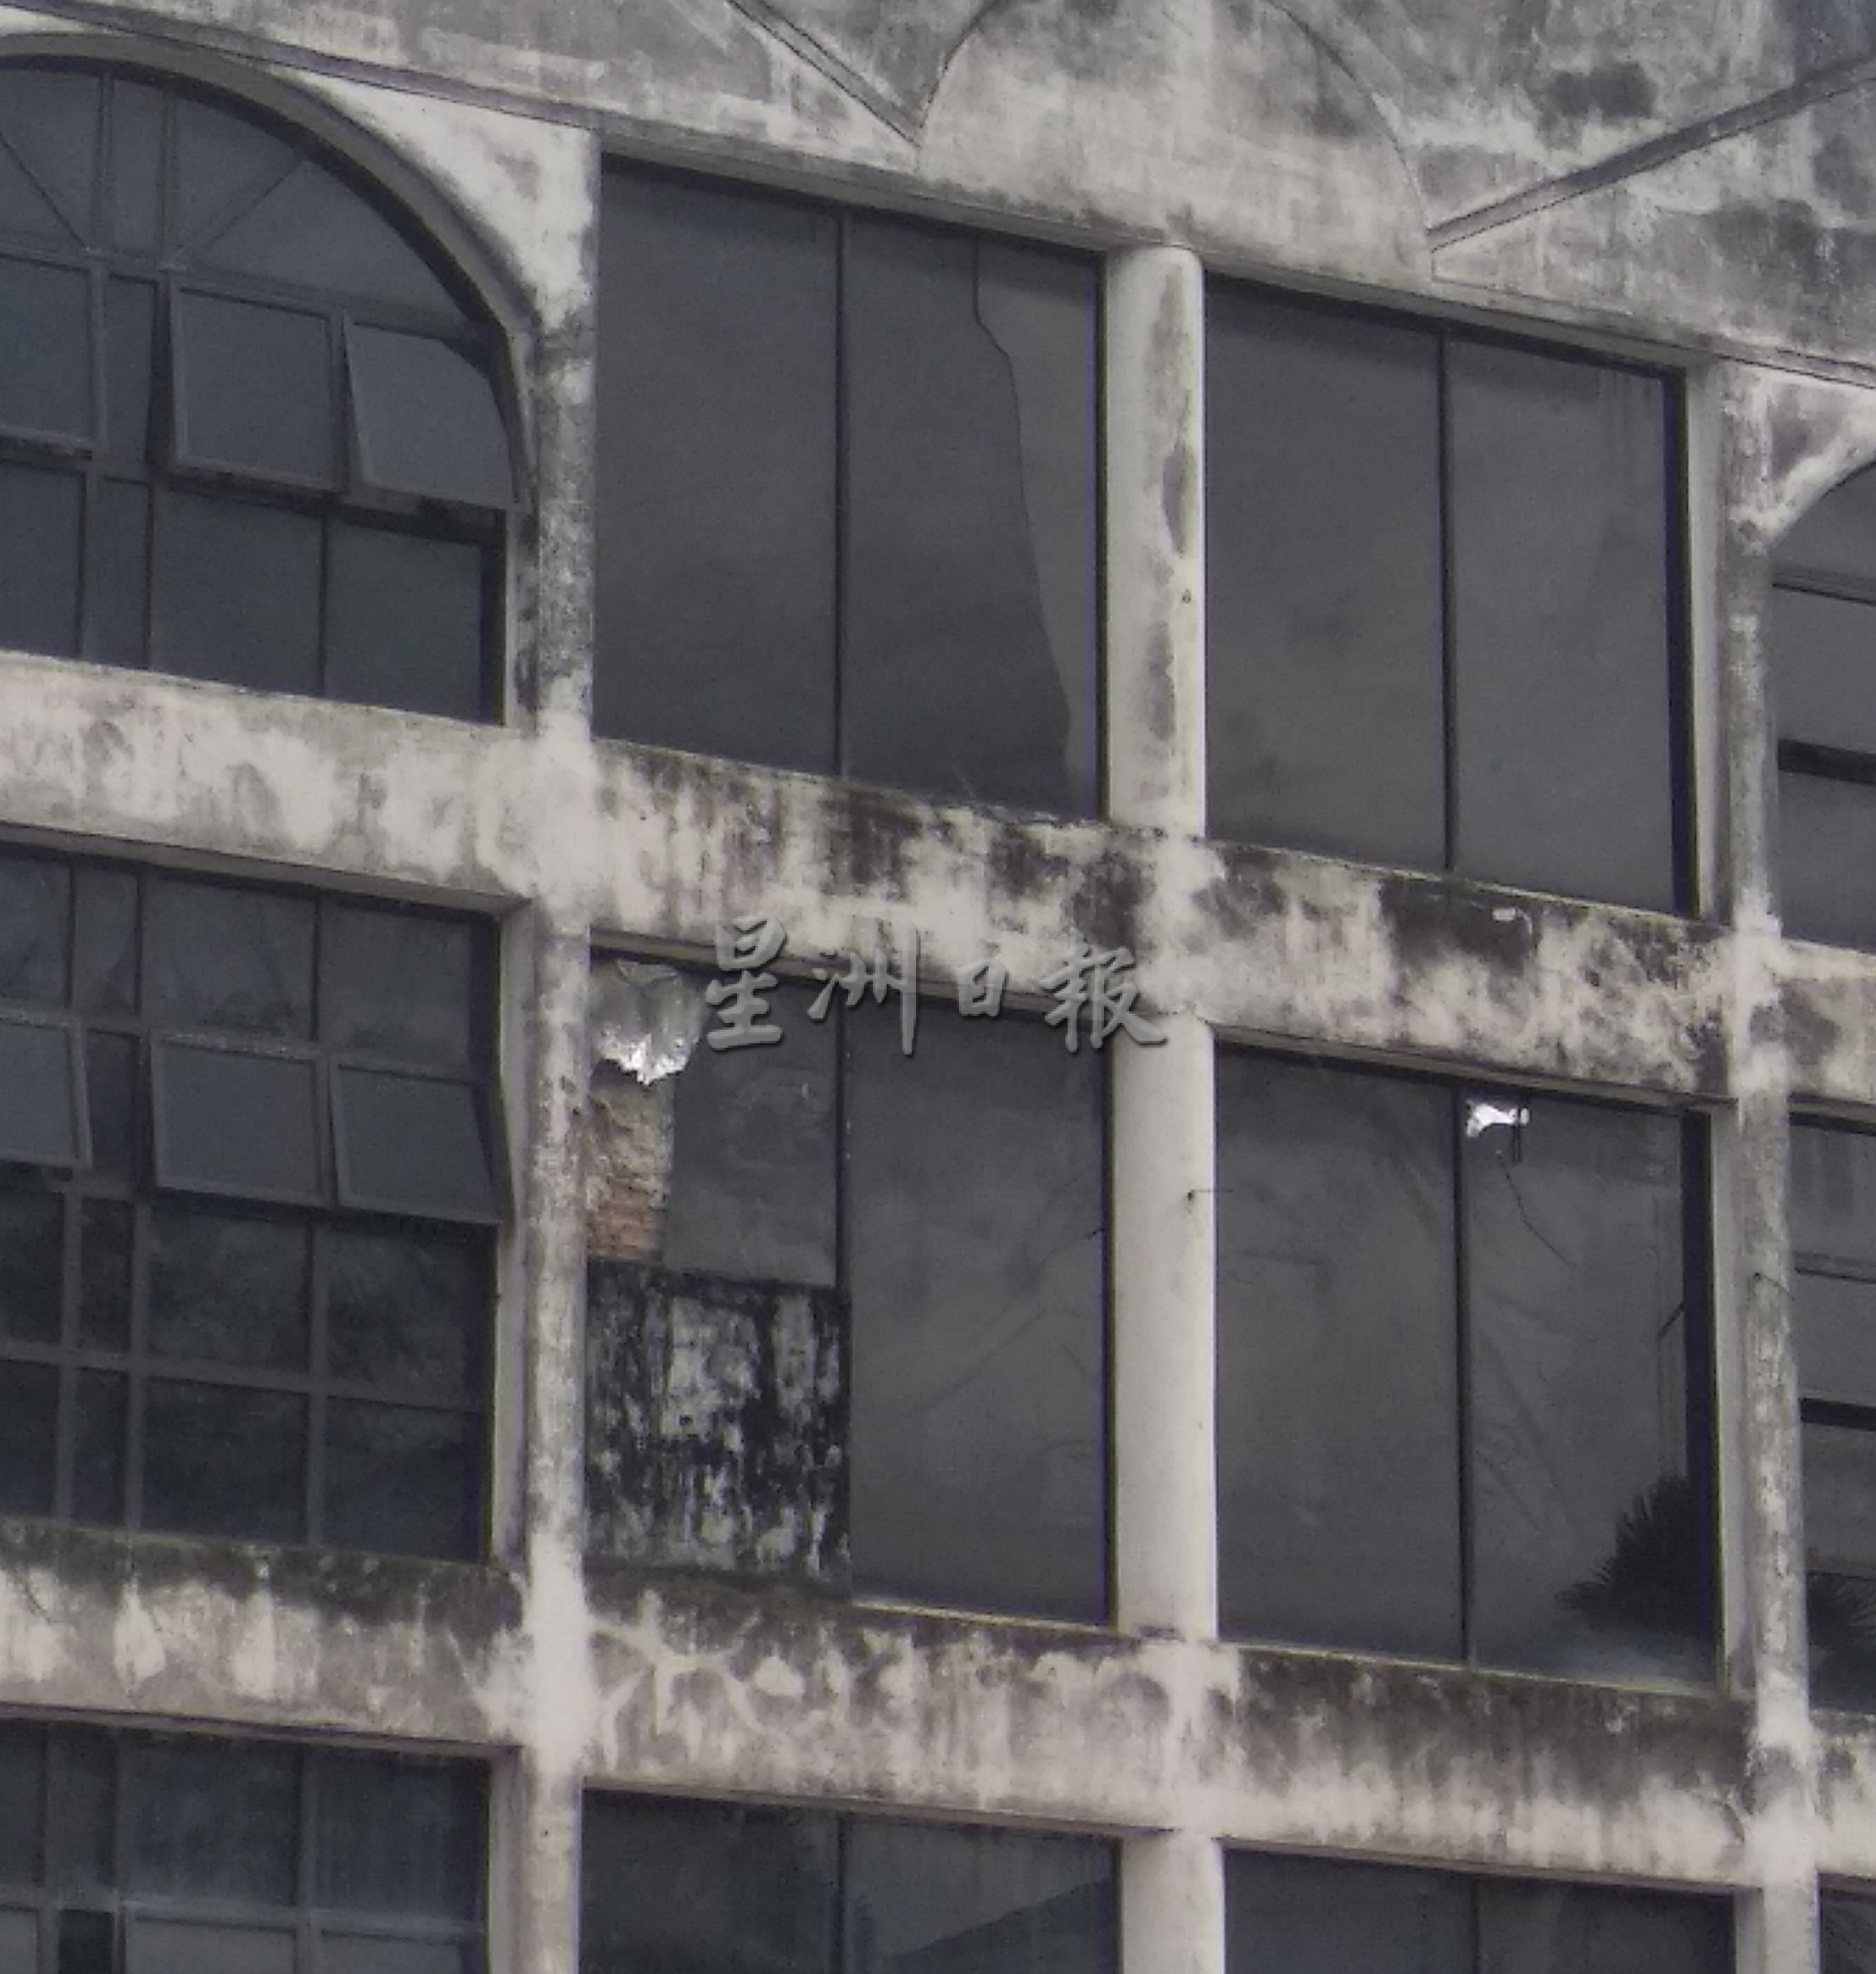 文德甲市区废置商业楼 玻璃窗破裂掉落马路